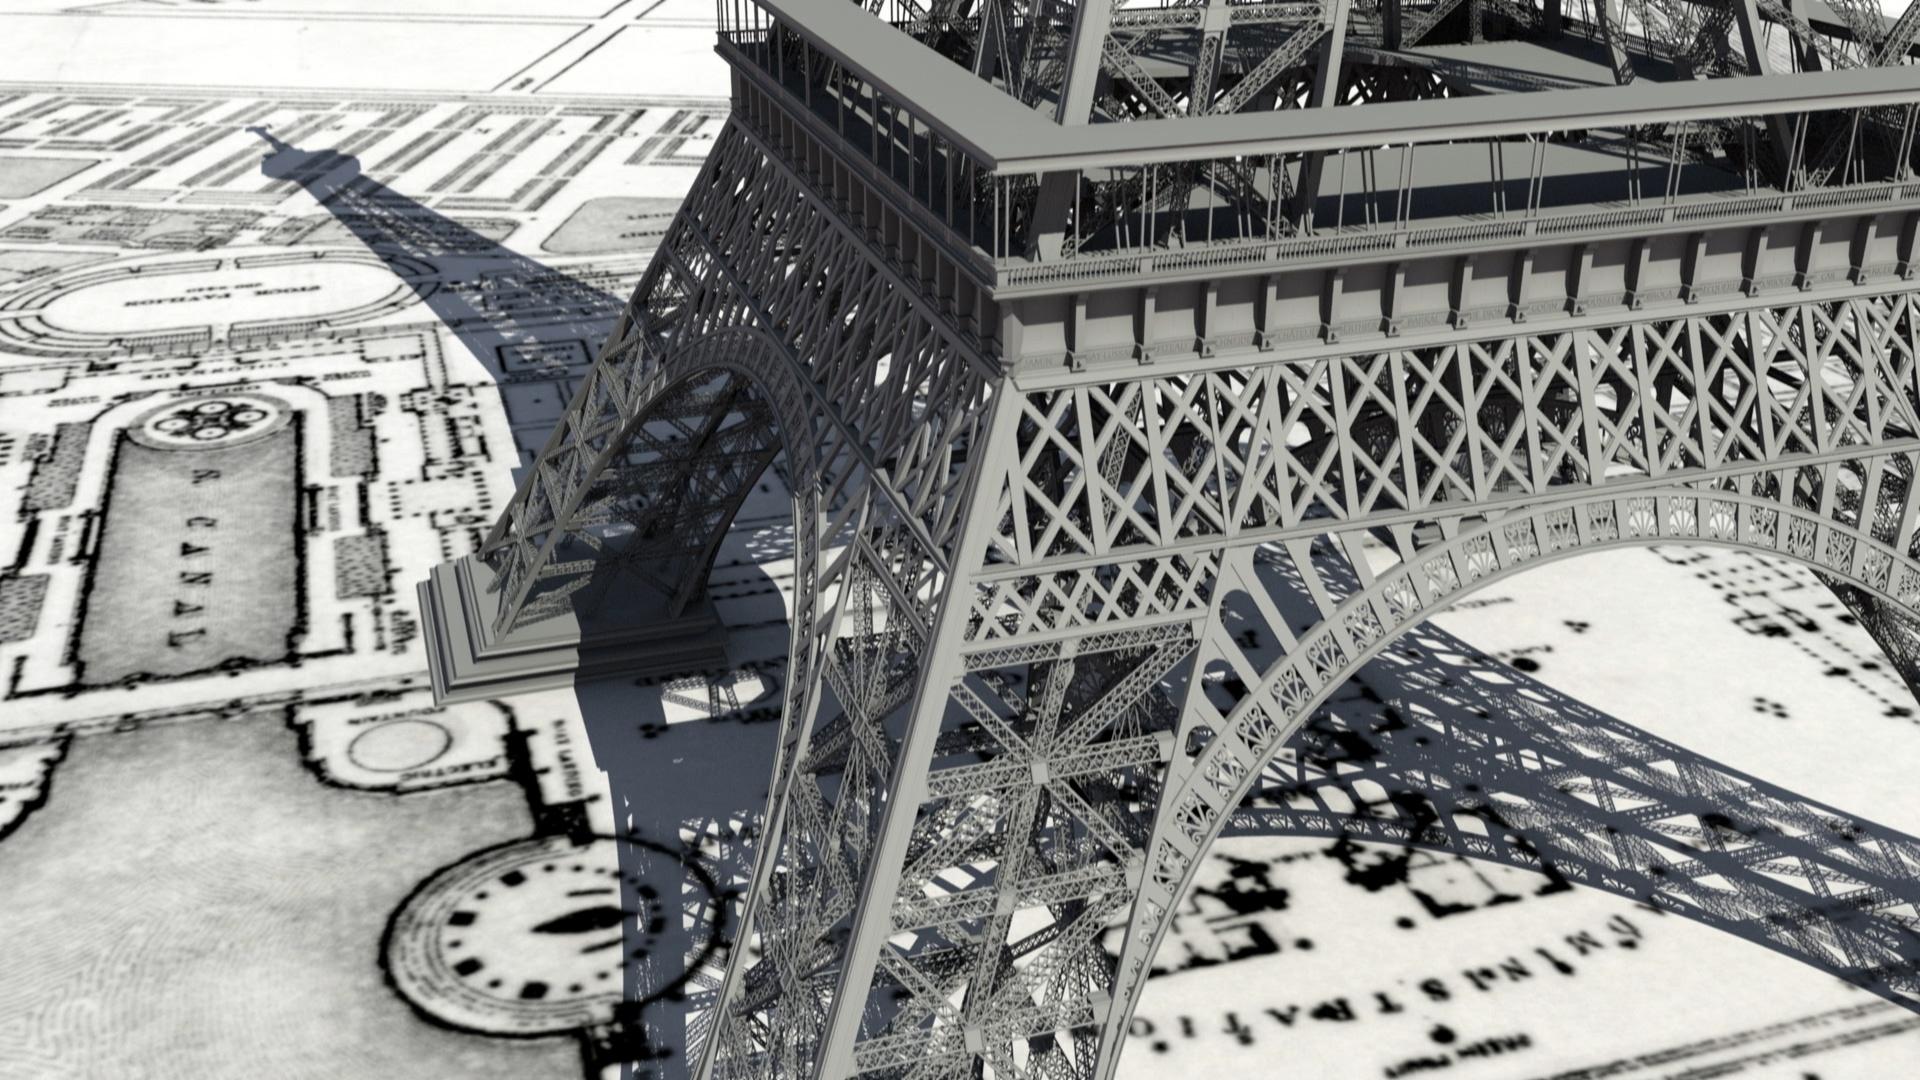 Paris DIY / Eiffel Tower Standup / Party Decor 